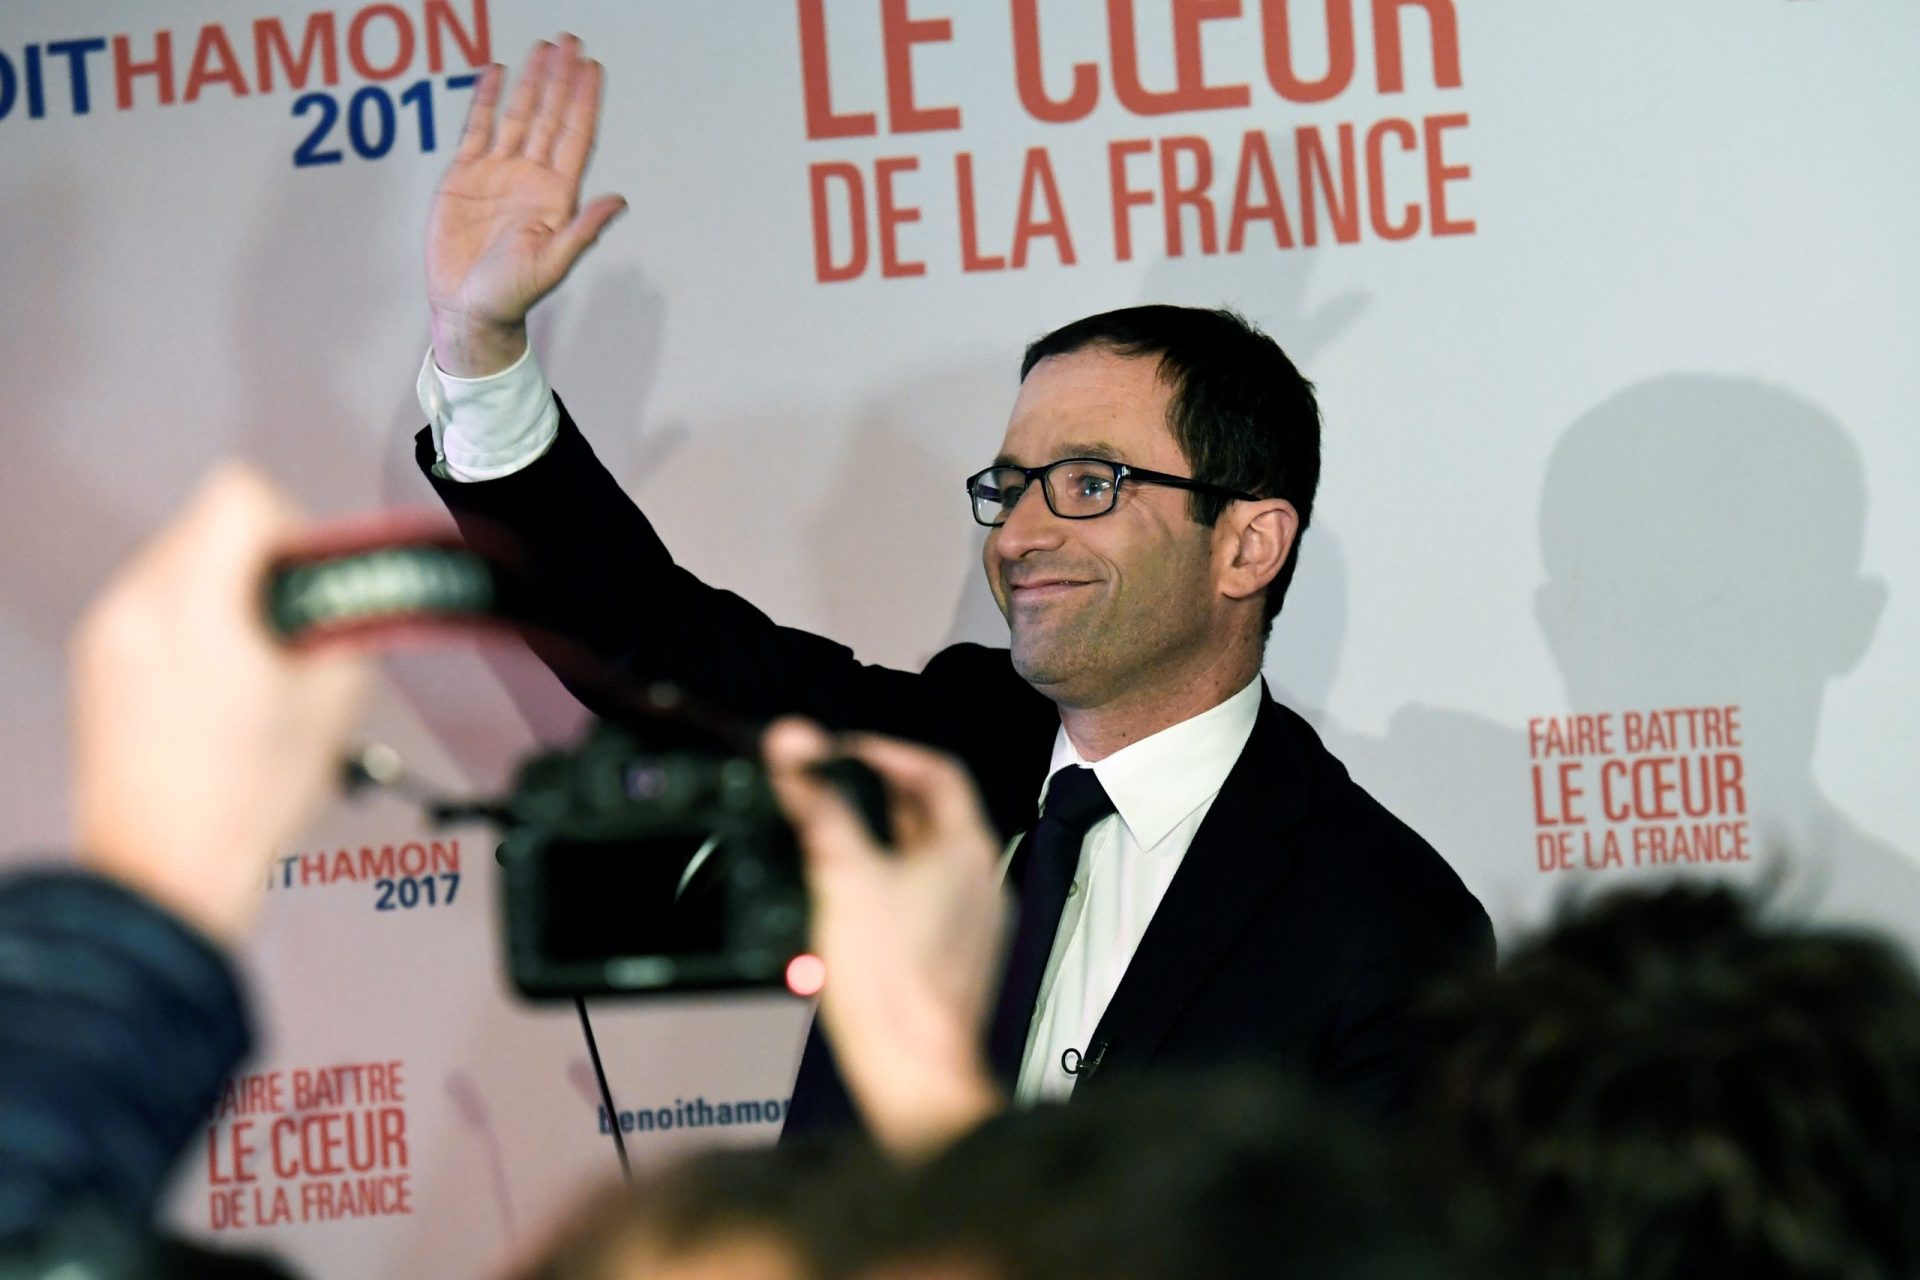 Benoît Hamon, o Bernie Sanders francês, vence a primeira volta da esquerda